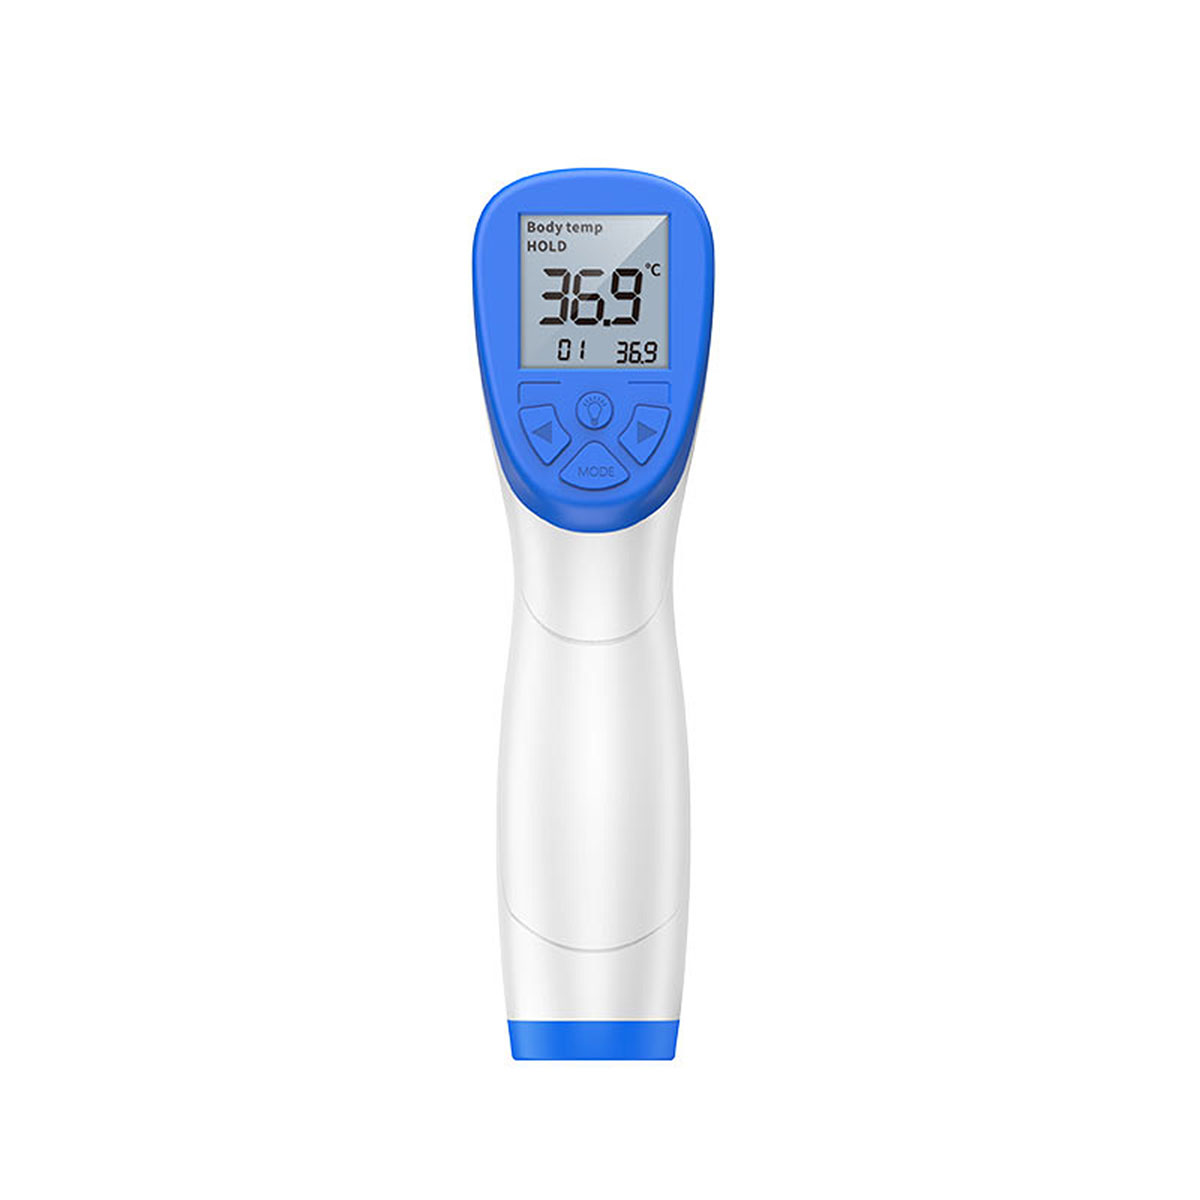 HOCO KY-111 бесконтактный инфракрасный термометр, время измерения 1с, с LCD экраном и сохранением данных, цвет белый.